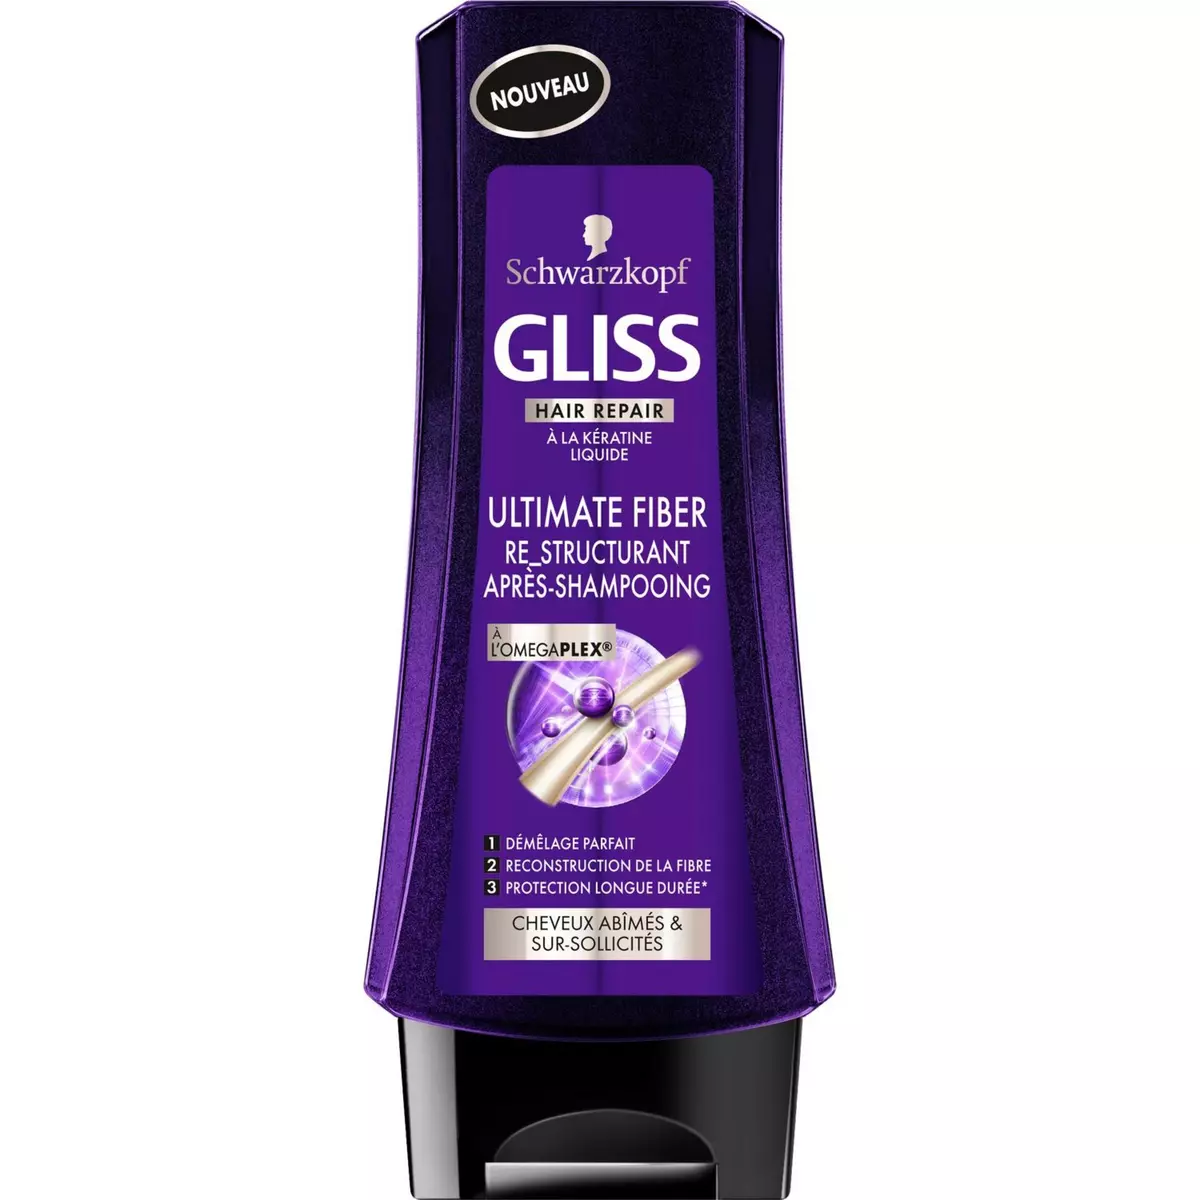 GLISS Après-shampooing re-structurant à l'omegaplex cheveux abîmés 200ml